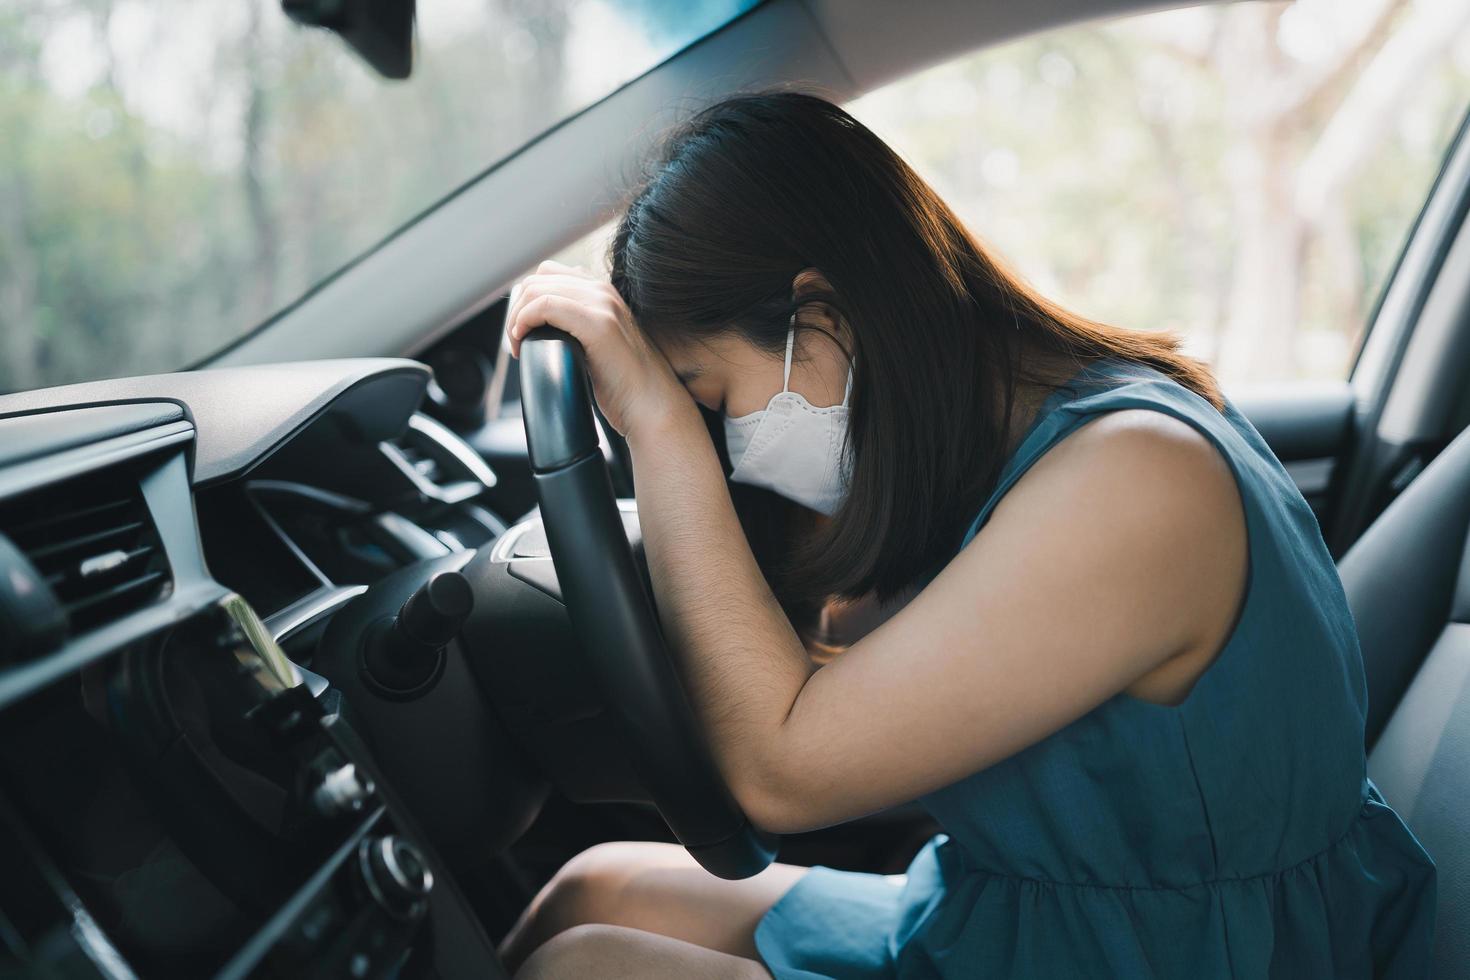 mujer asiática durmiendo la siesta en su automóvil debido al cansancio por la carga de trabajo o la sensación de sueño. mujer conductora que se siente somnolienta o mareada mientras conduce, está tomando una siesta en un camión. concepto de transporte. foto